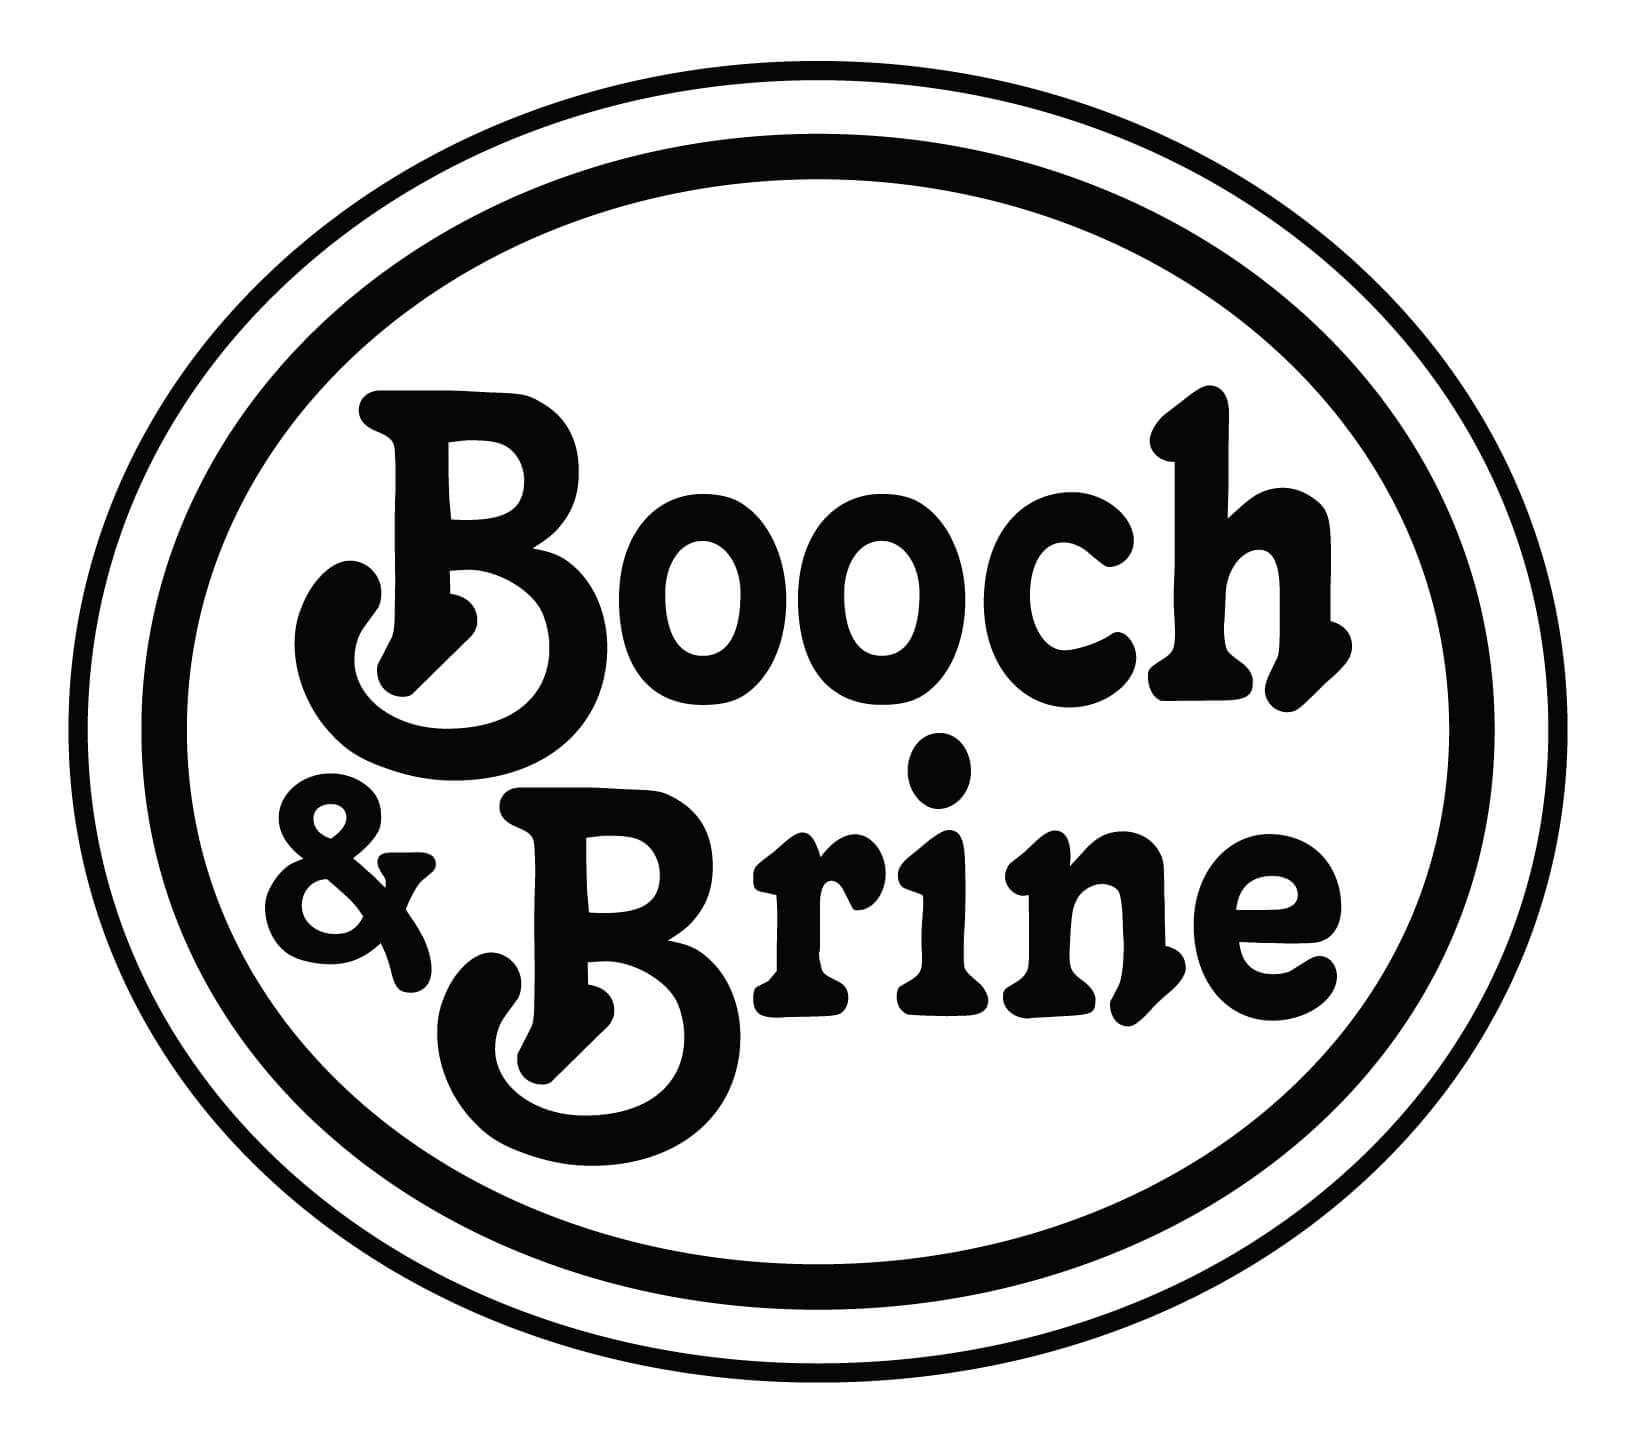 Booch & Brine